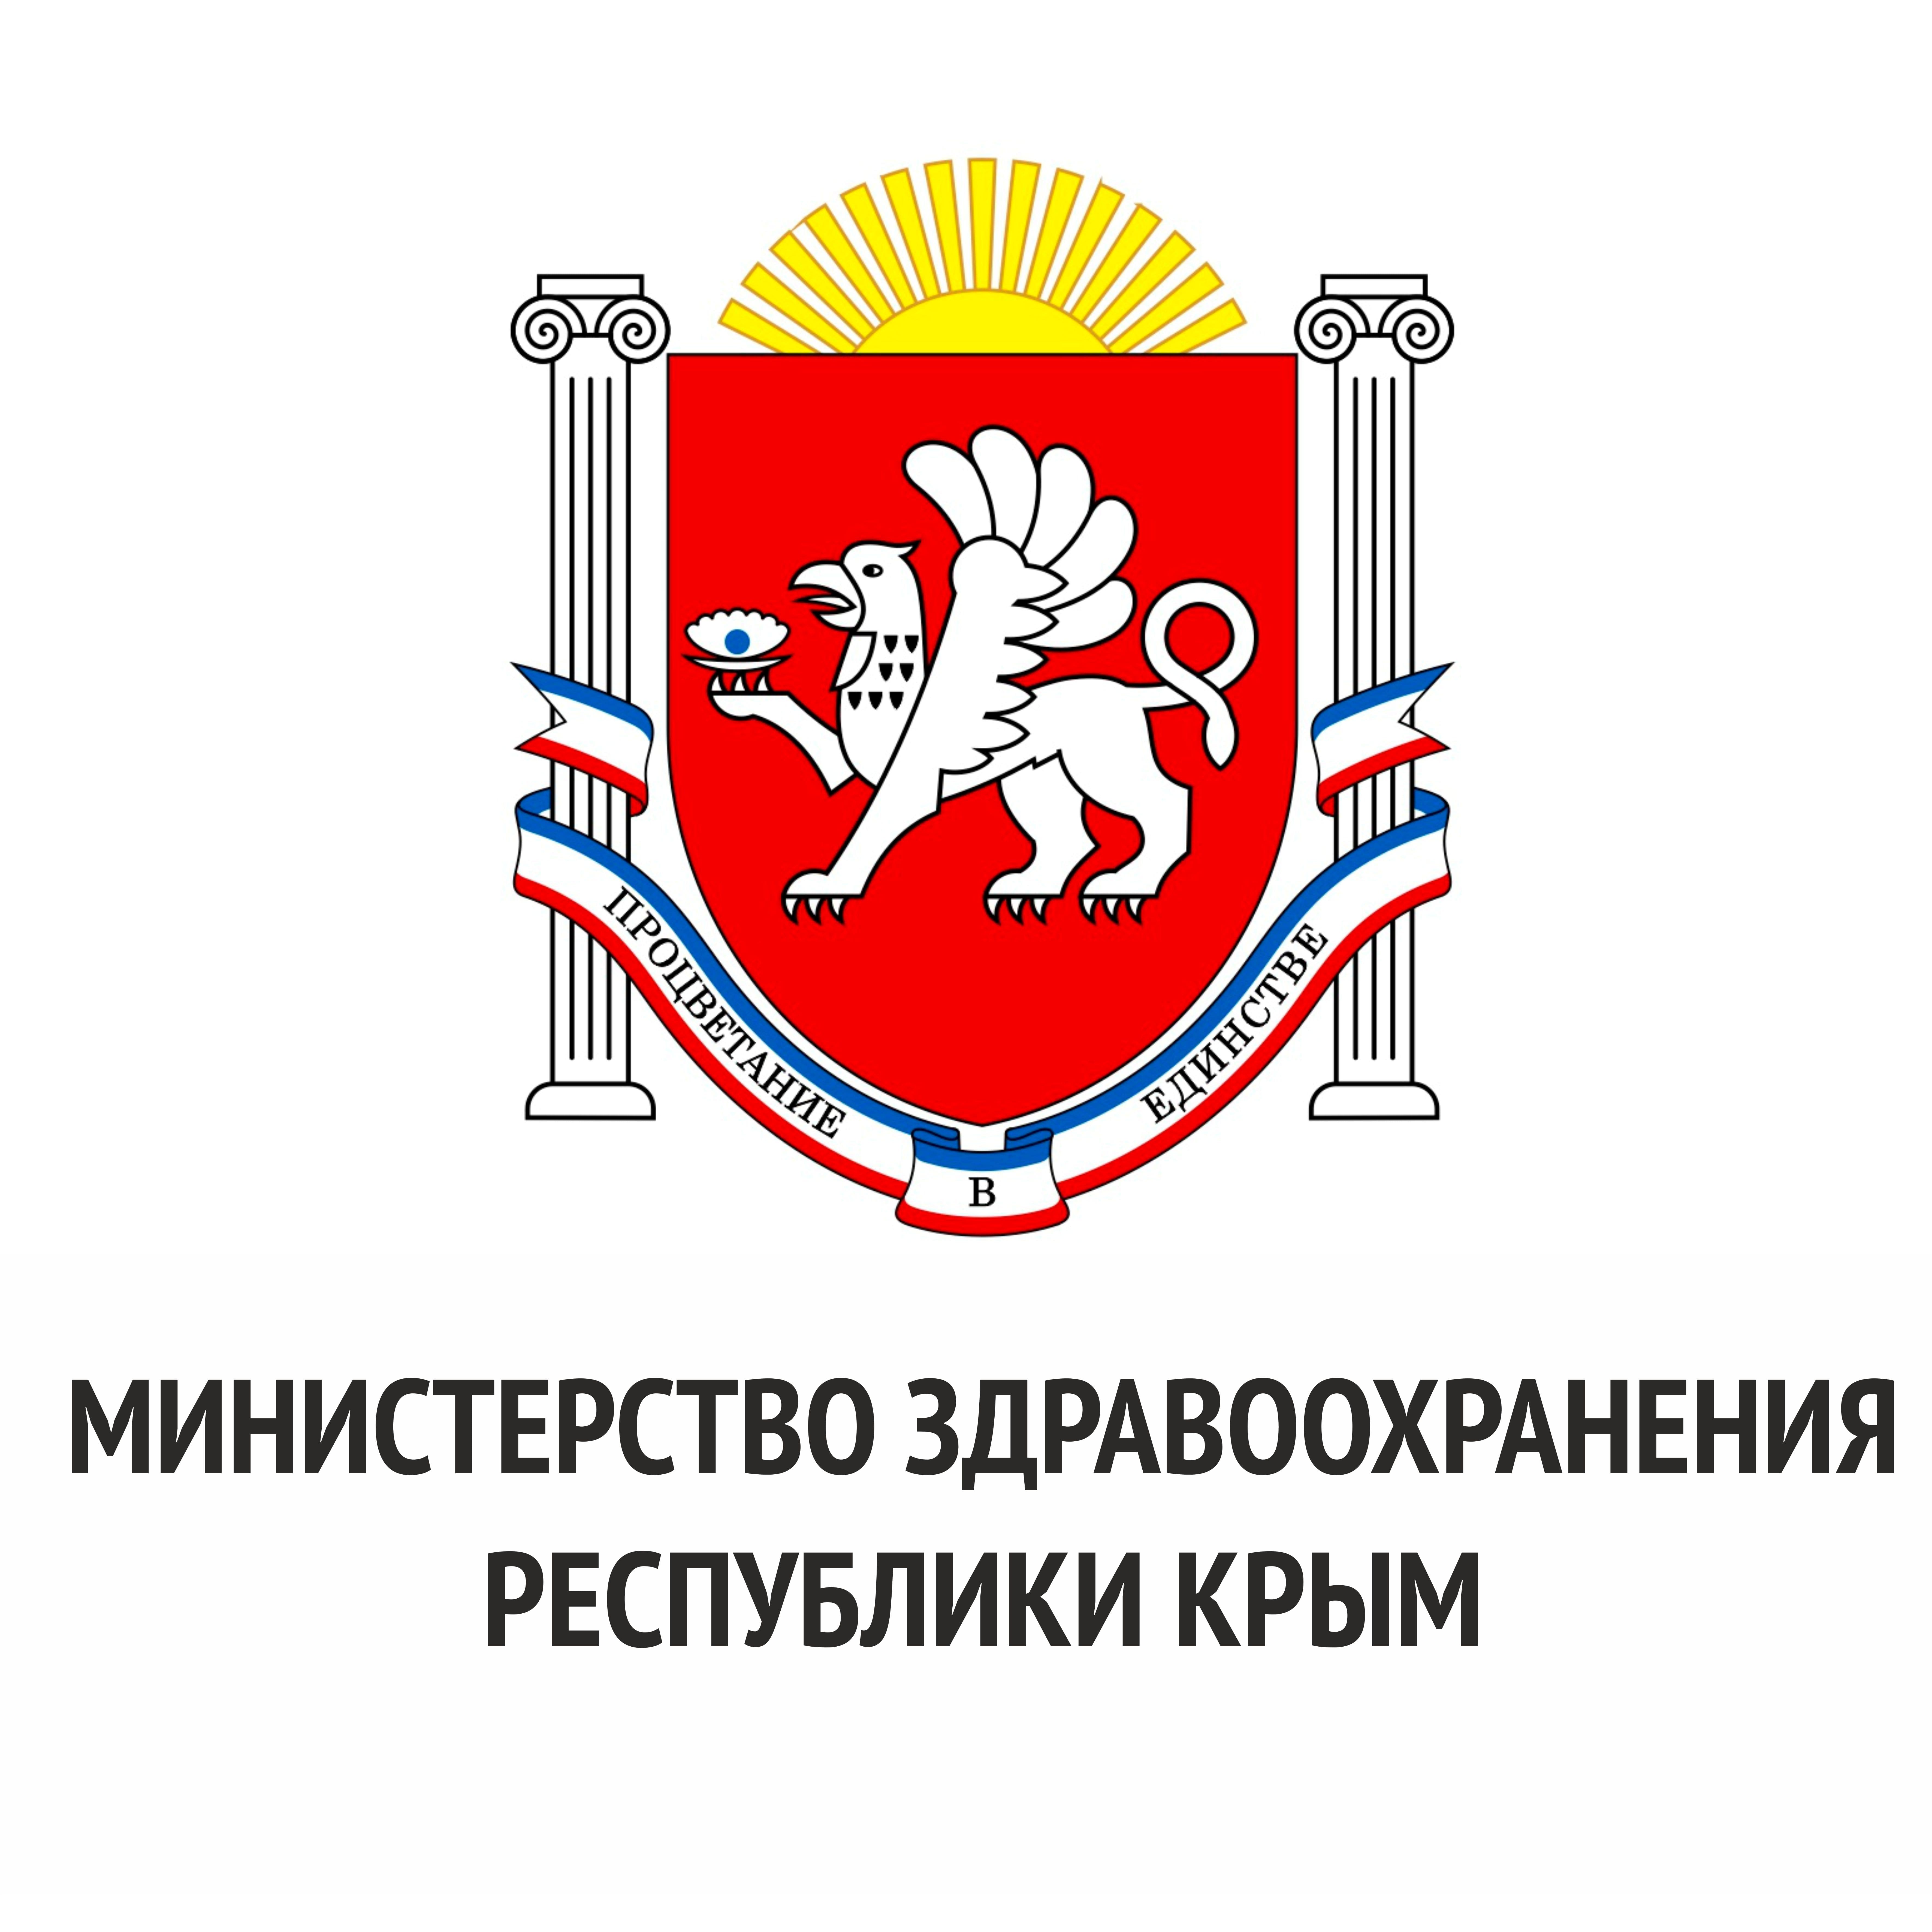 Министерство здравоохранение Республики Крым